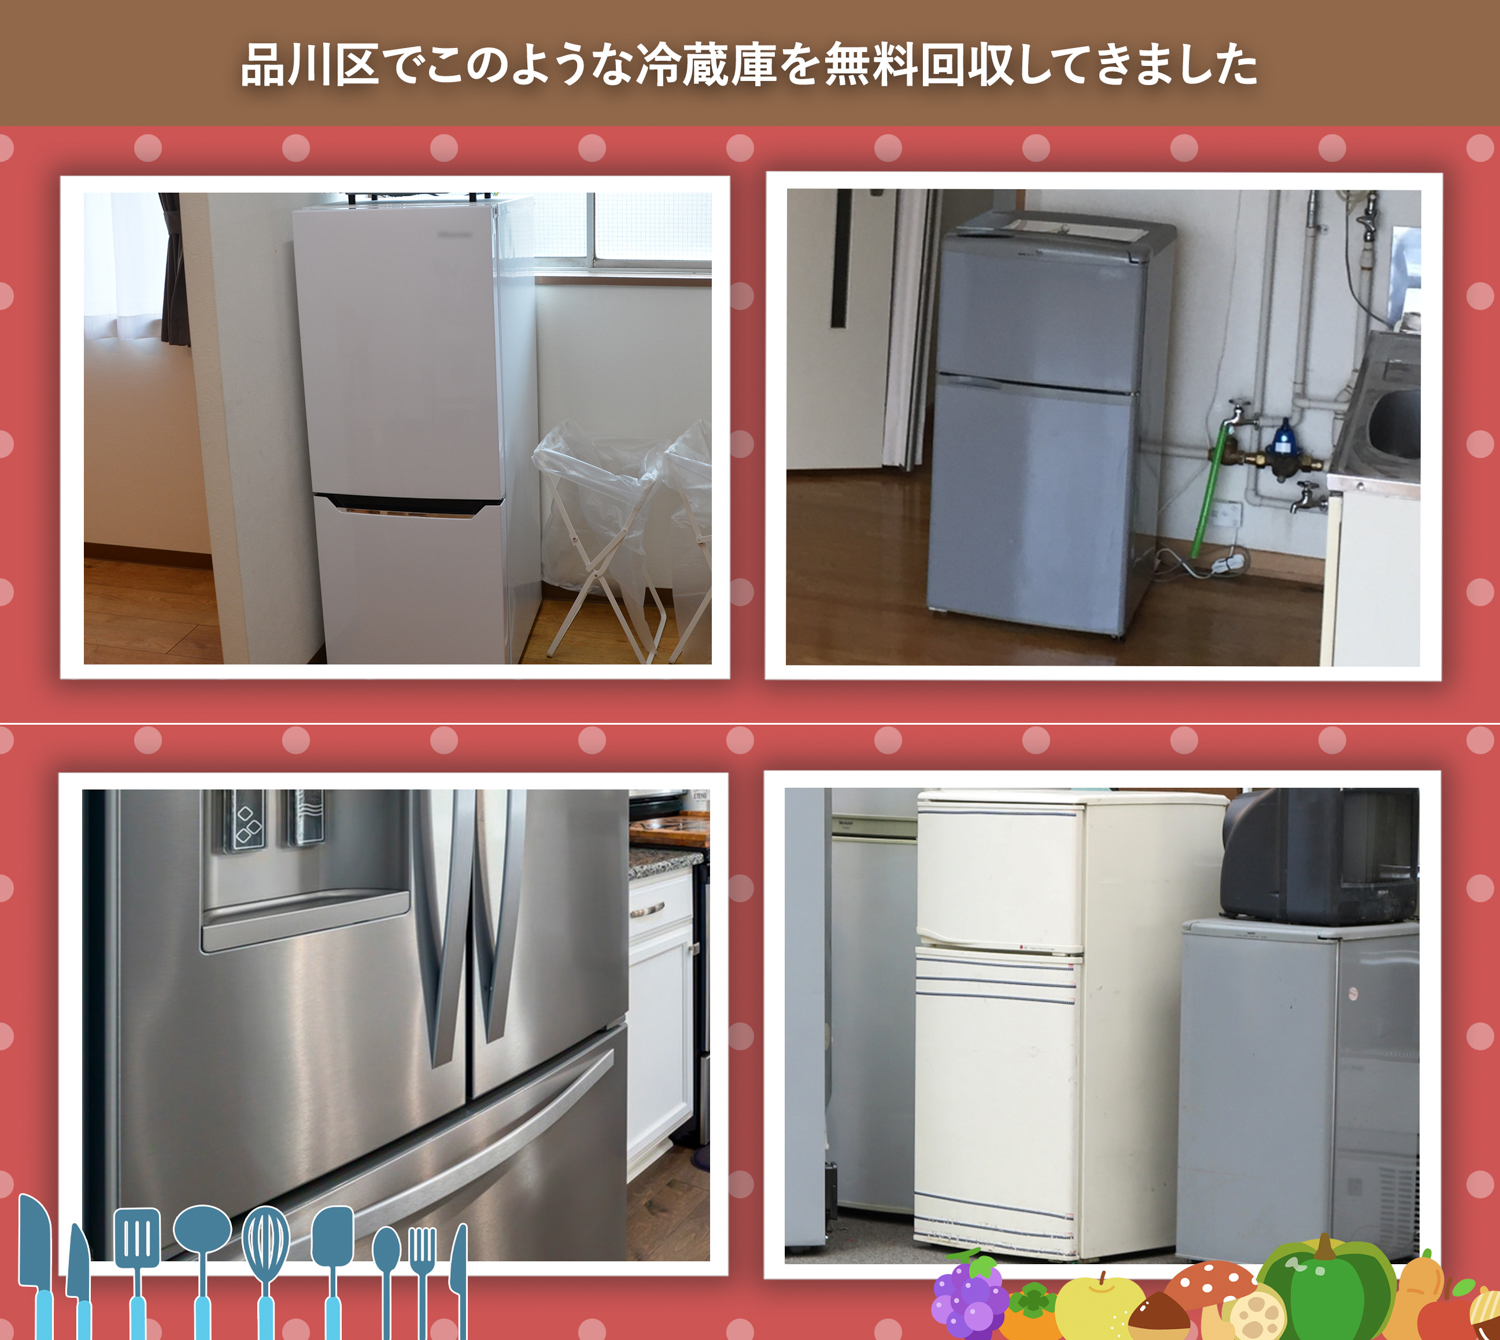 品川区でこのような冷蔵庫を無料回収してきました。